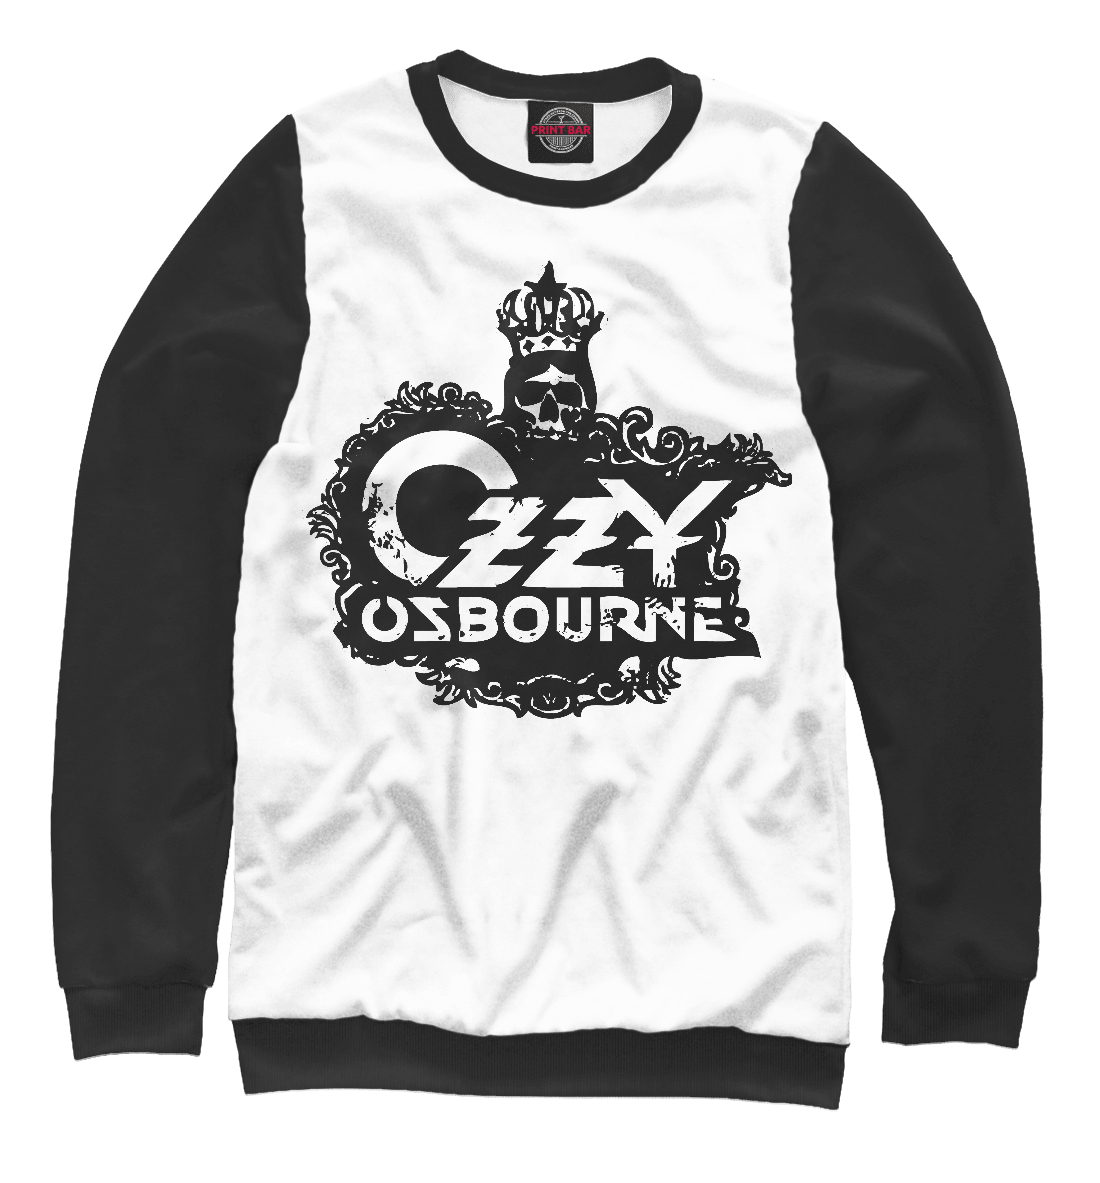 Свитшот Ozzy Osbourne OZO-579333-swi-1